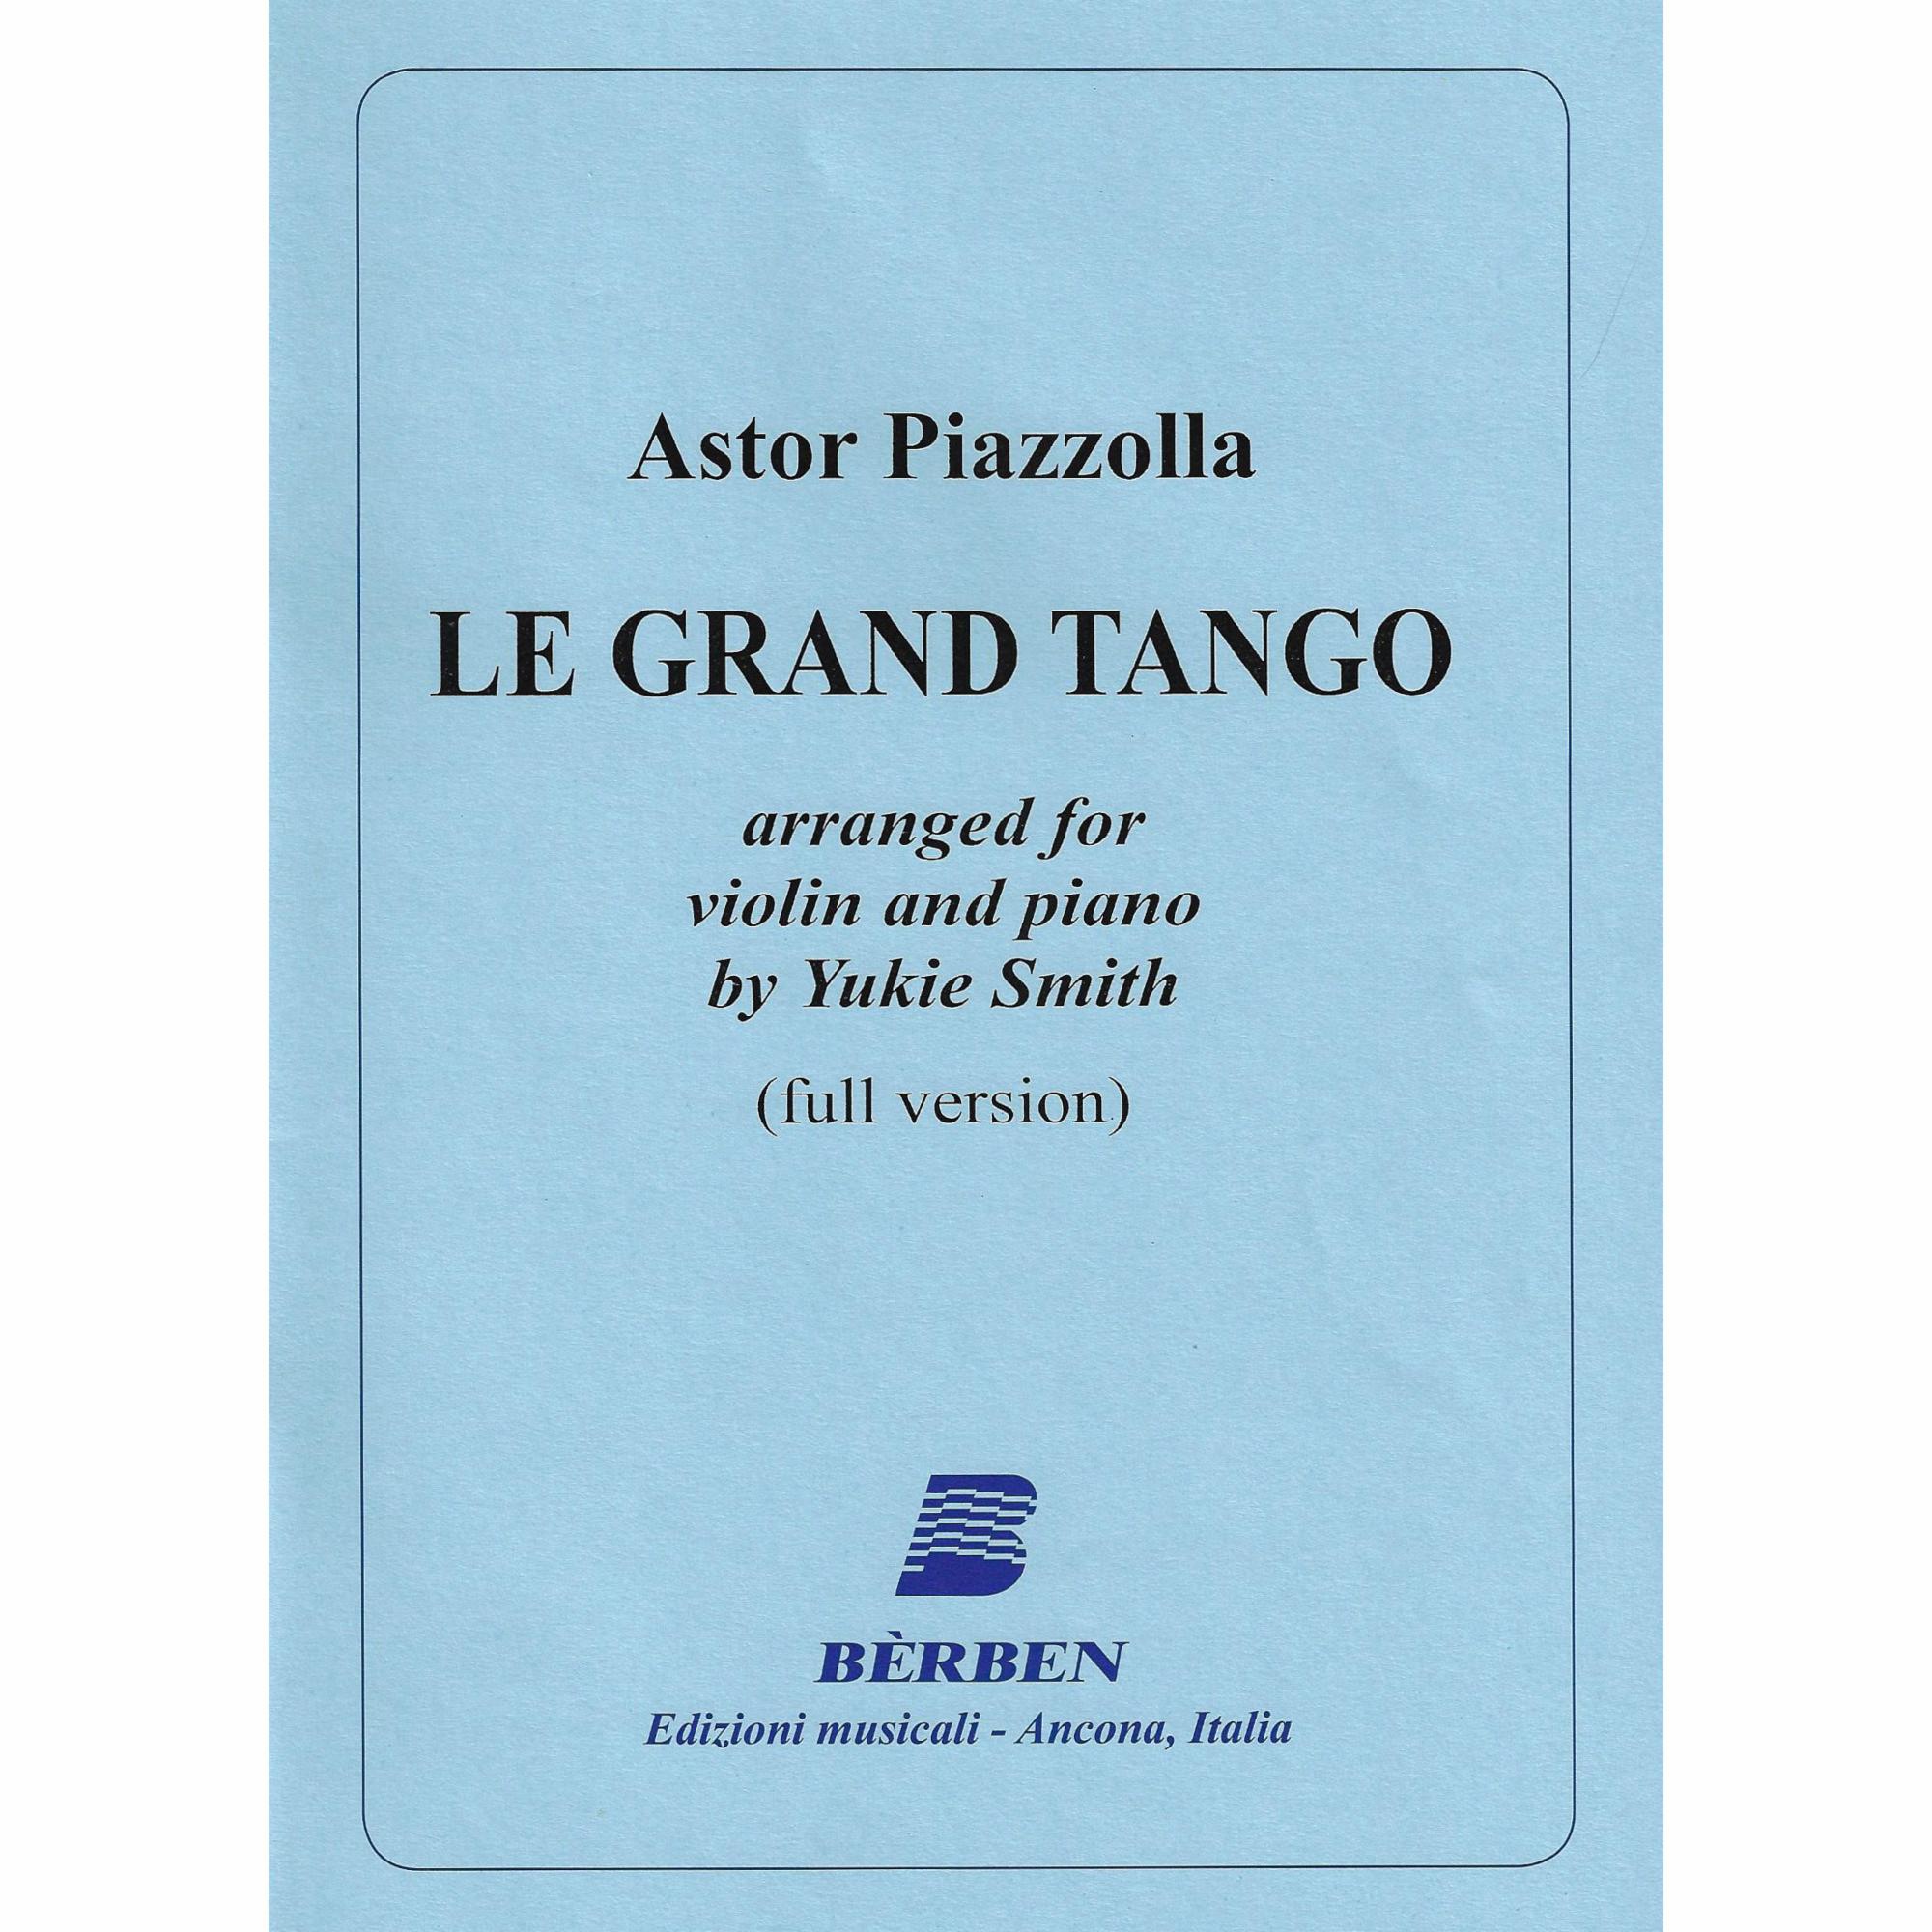 Le Grand Tango for Violin and Piano